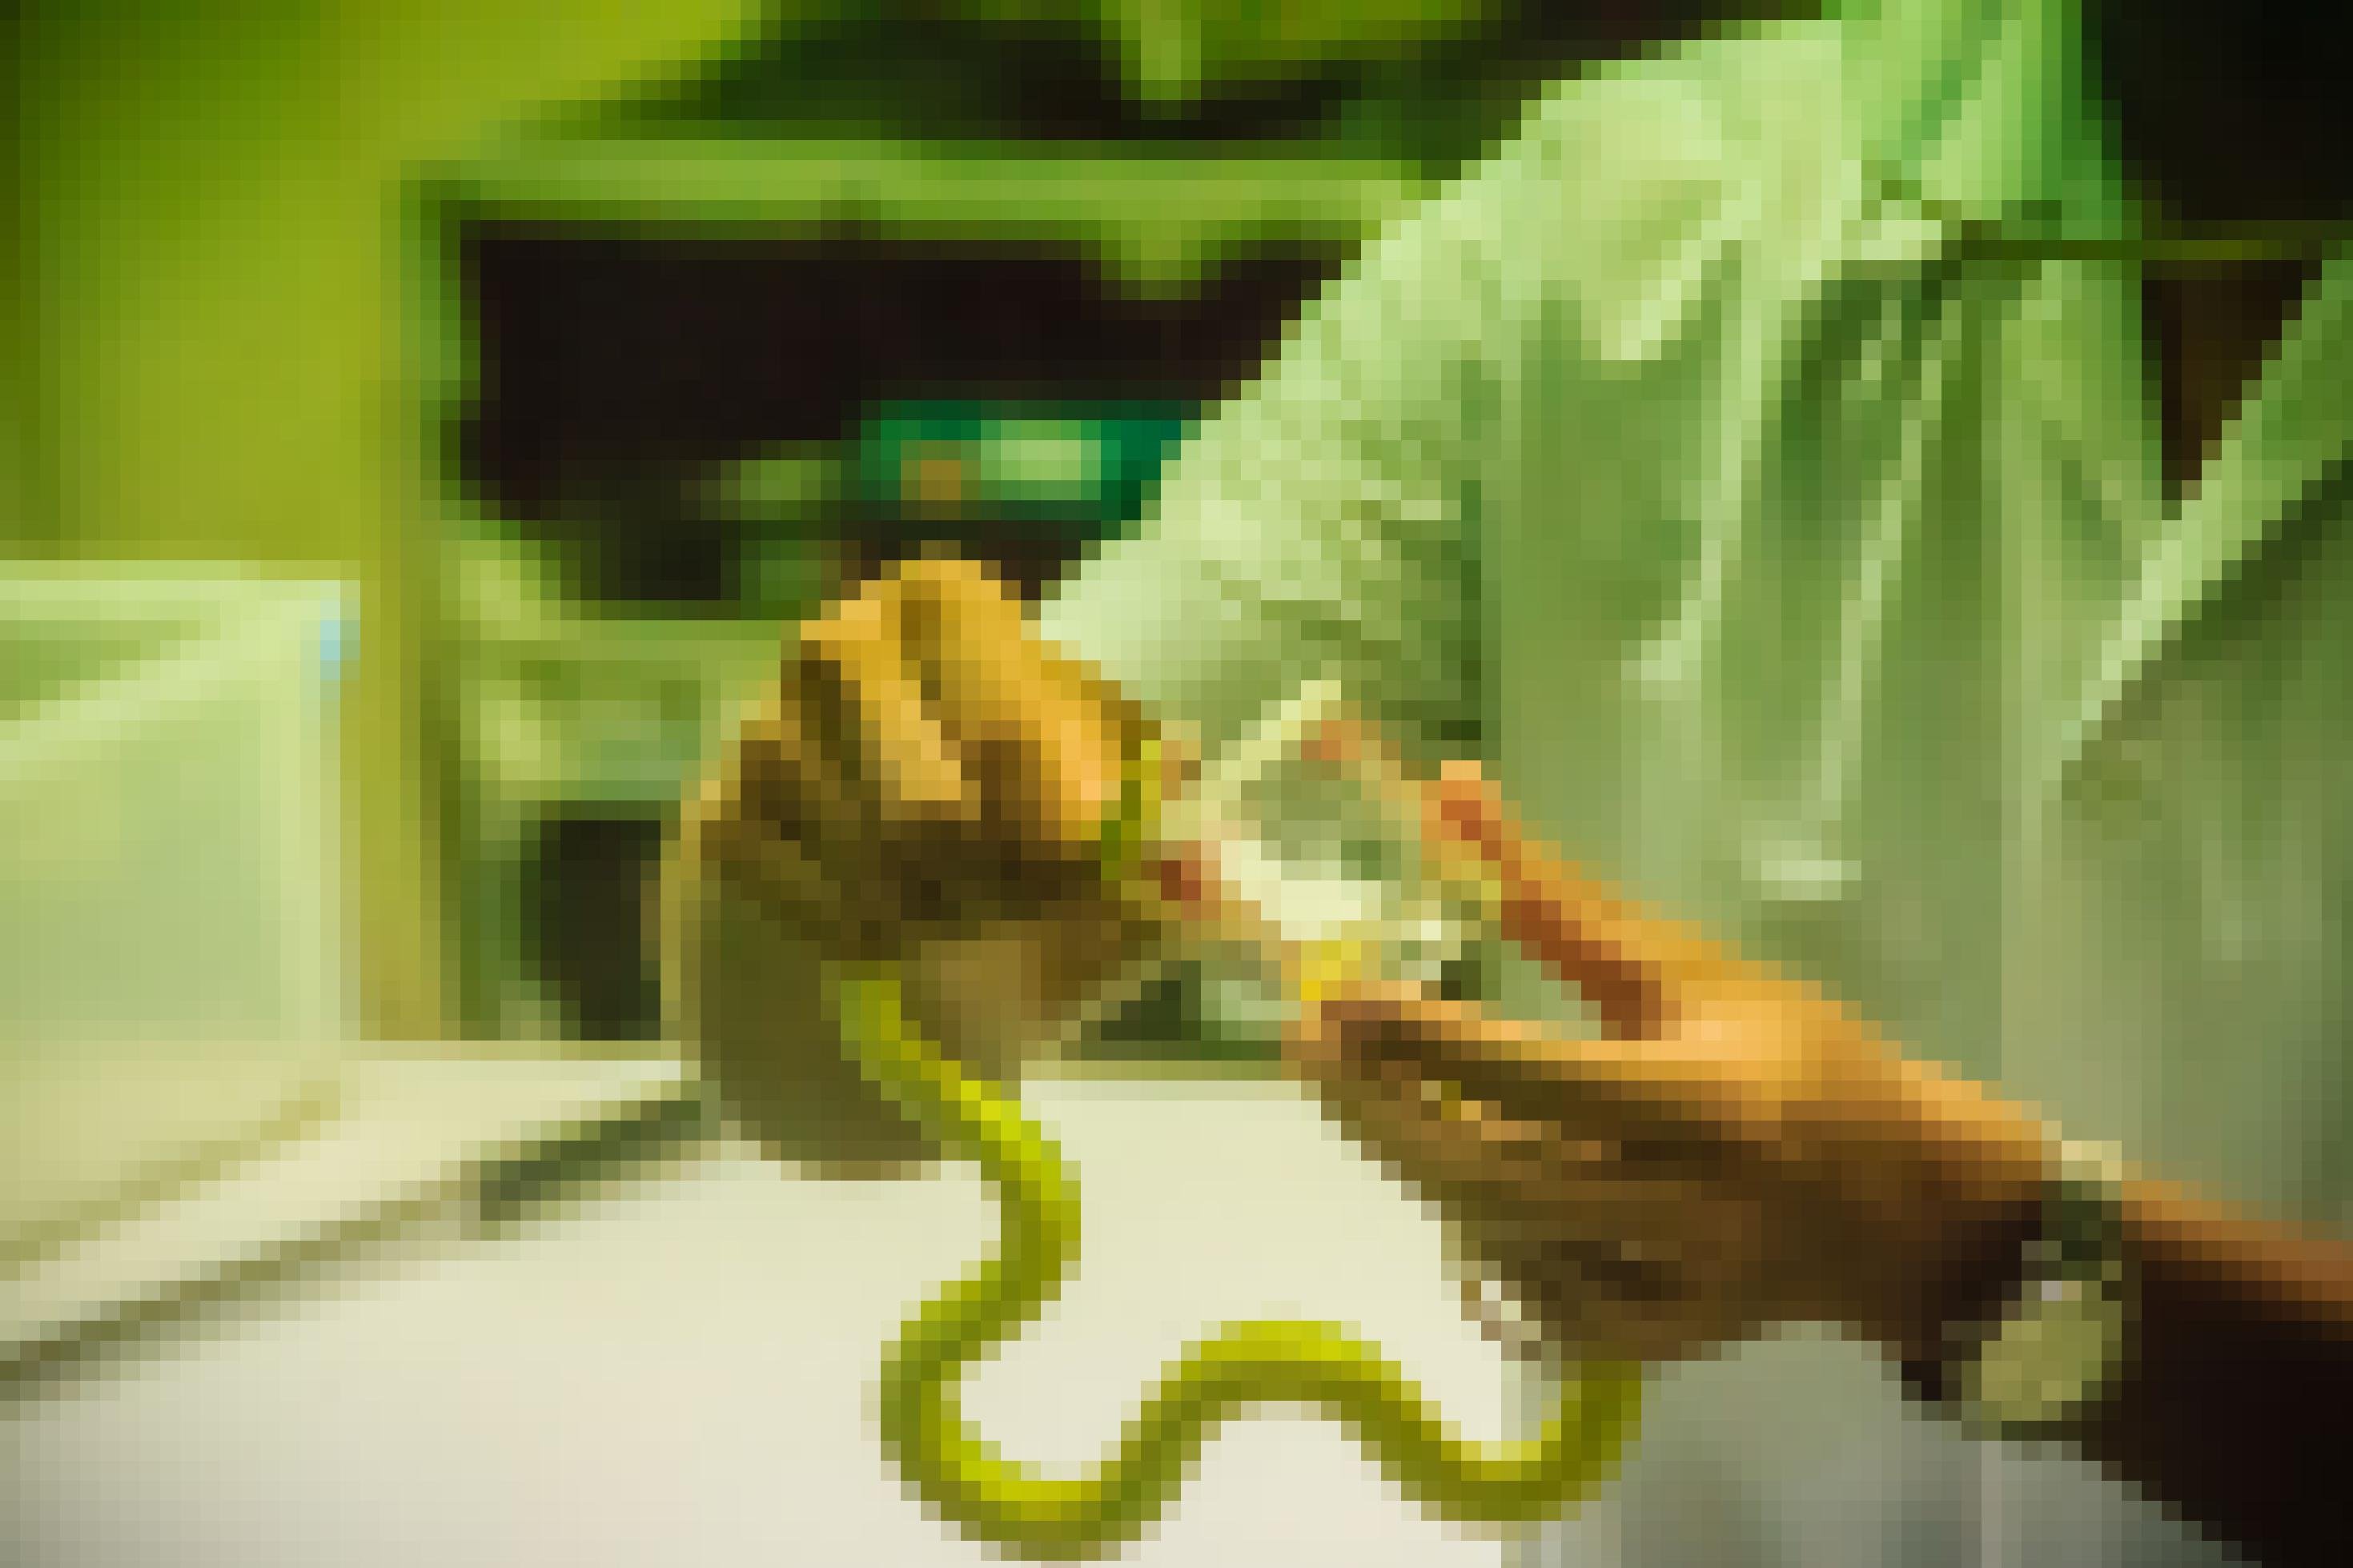 Ein Mann hält eine grüne Schlange und lässt sie in einen Becher beißen, so dass das gelbliche Gift sich dort sammelt.